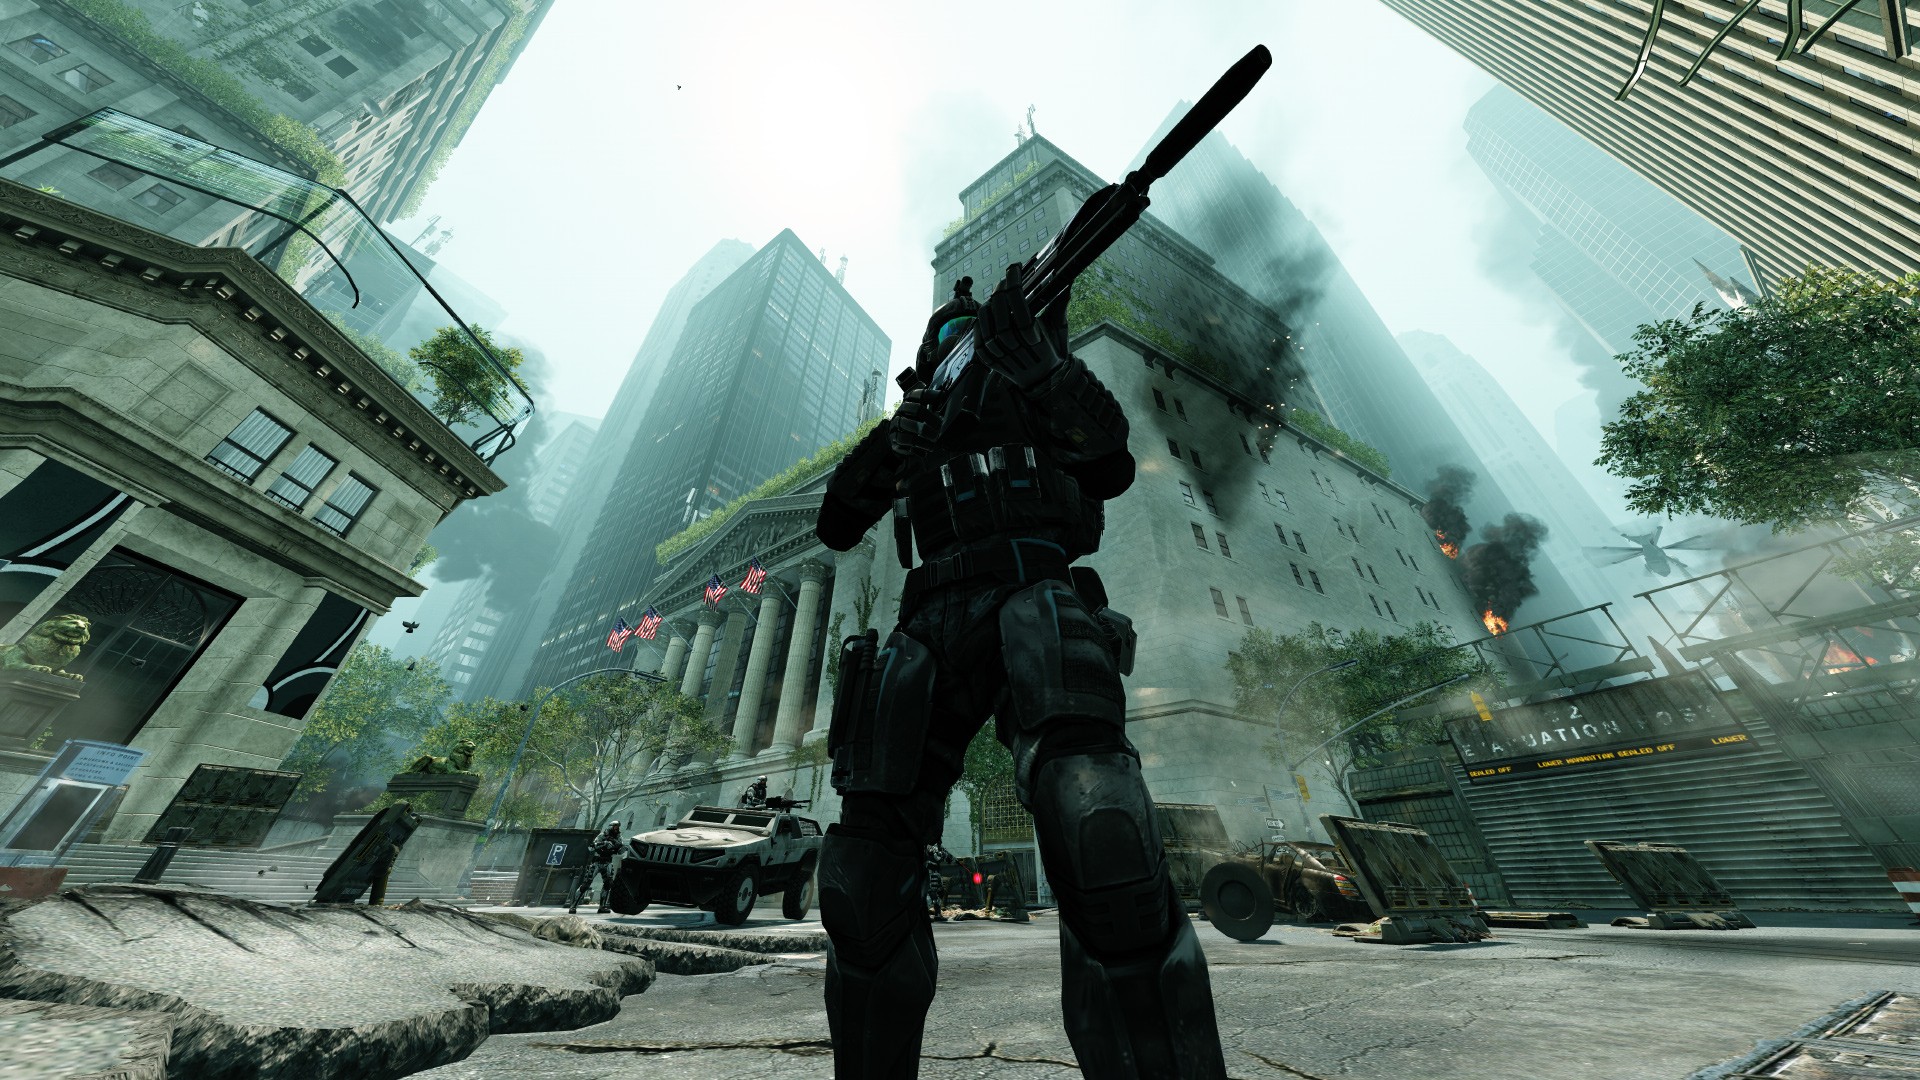 General 1920x1080 Crysis Crysis 2 video games city gun soldier Crytek Electronic Arts